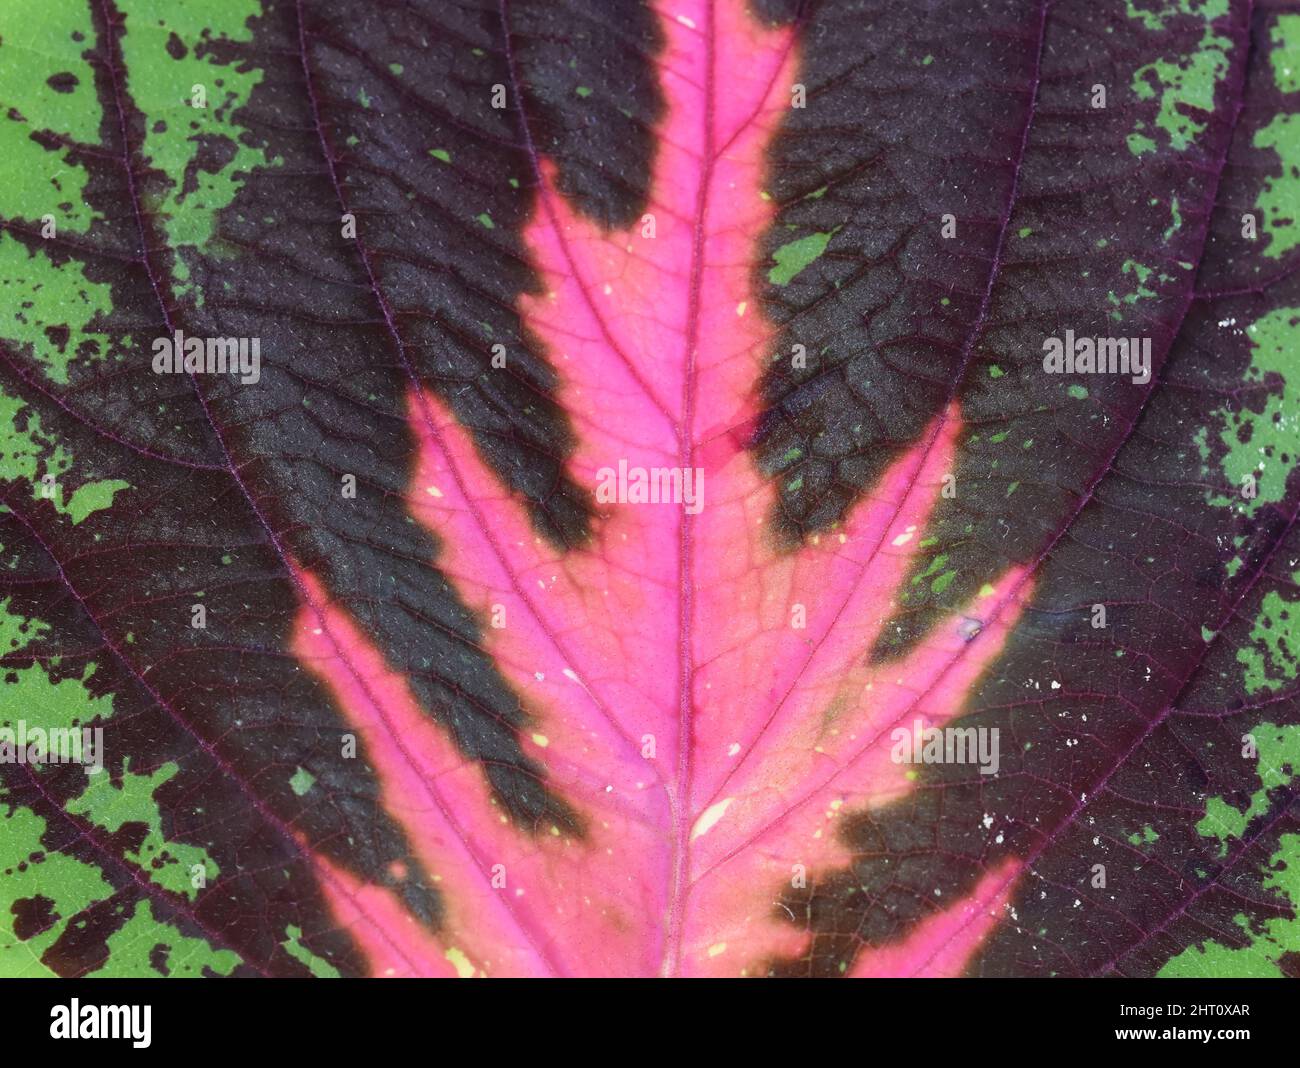 Nahaufnahme auf Blatt von Coleus bemalter Brennnesselpflanze mit verschiedenen Farben Stockfoto